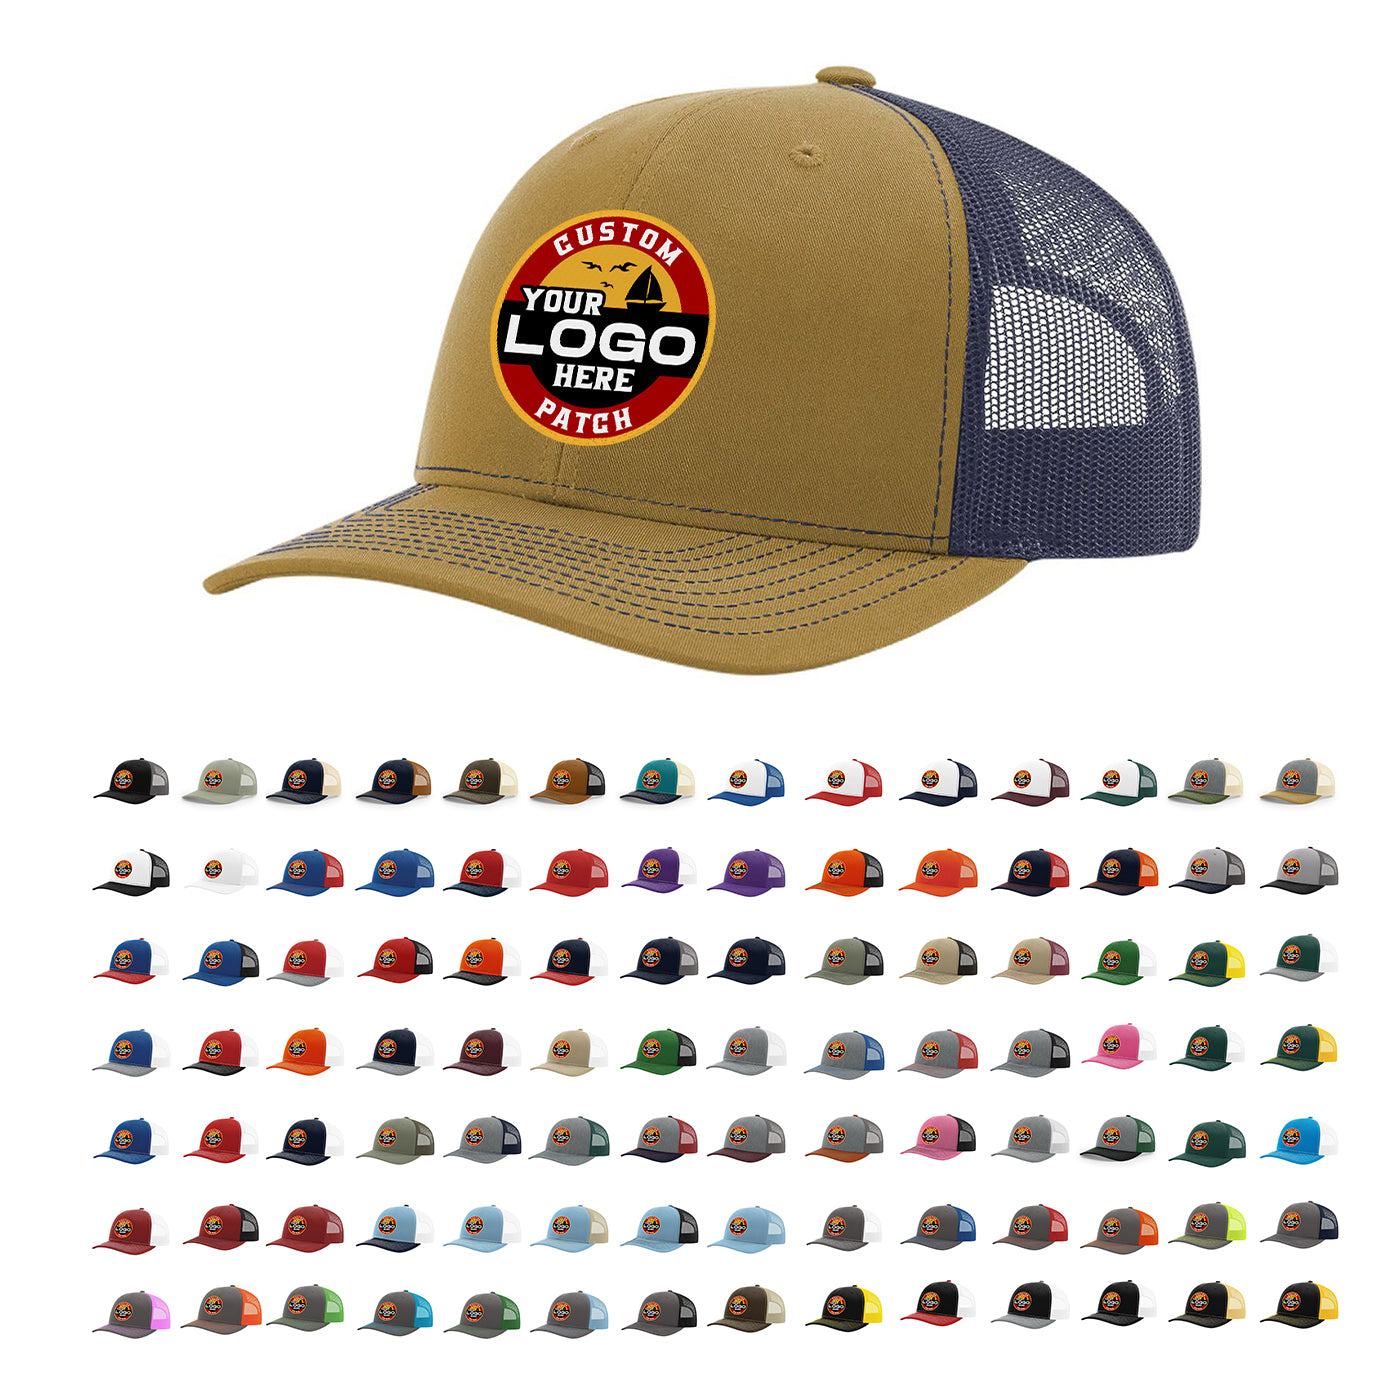 Custom Patch Richardson 112 Trucker Cap Split Hats Split Colors Two Colors